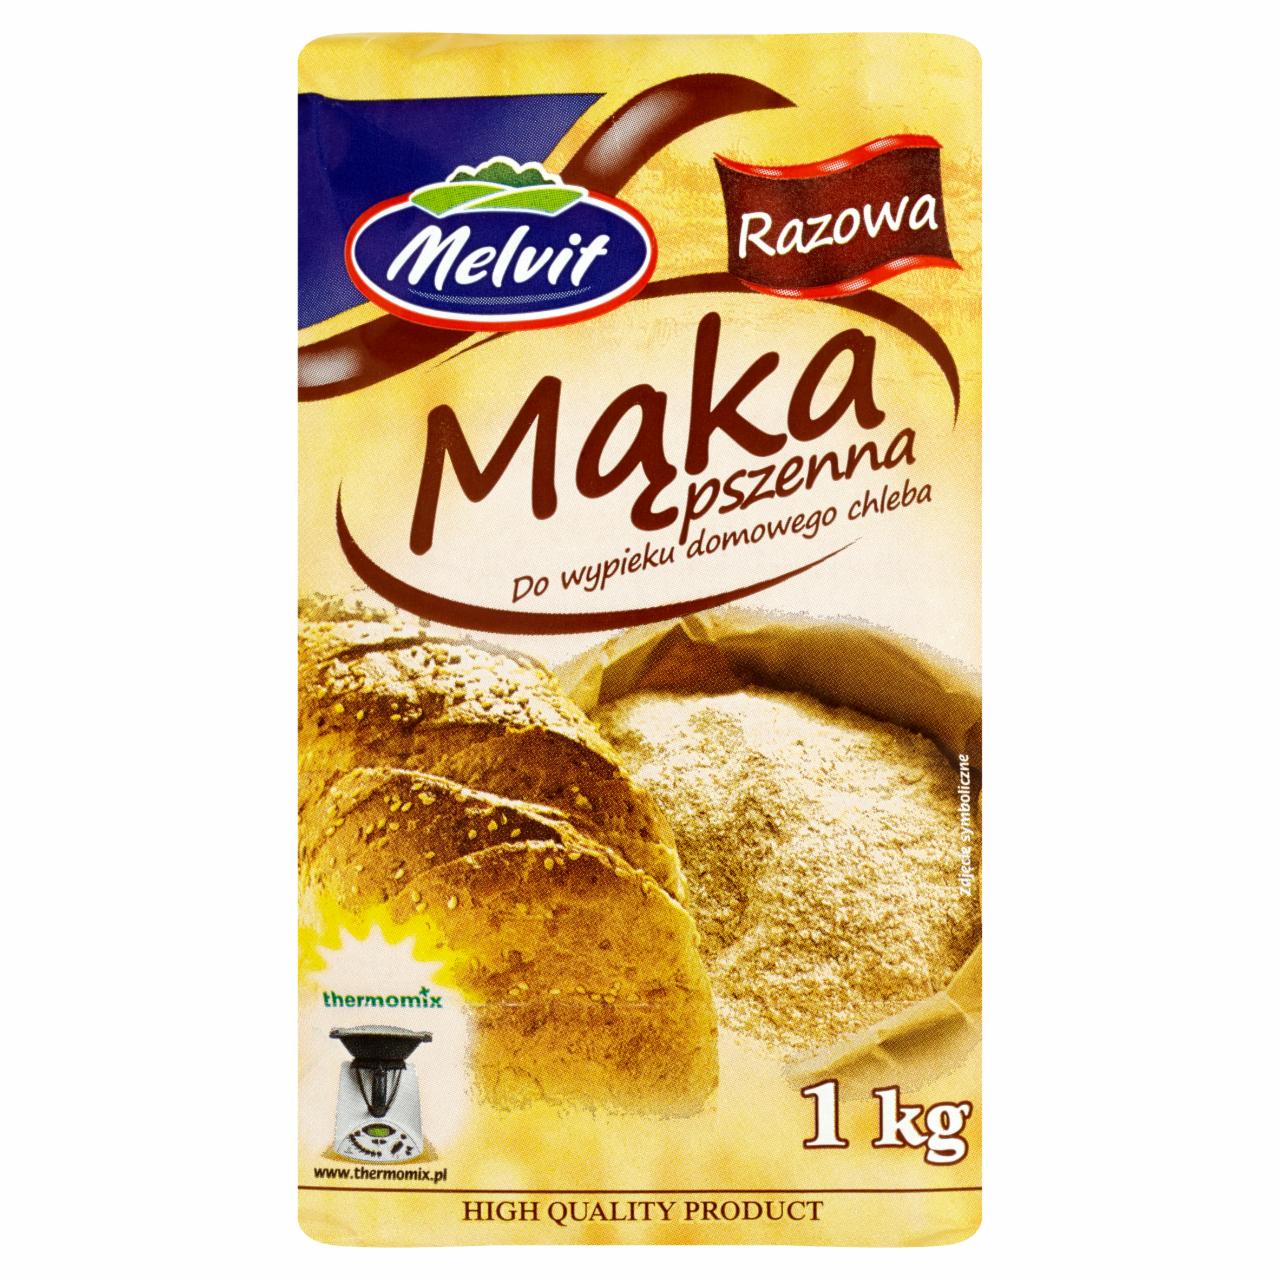 Zdjęcia - Melvit Mąka pszenna razowa do wypieku domowego chleba 1 kg